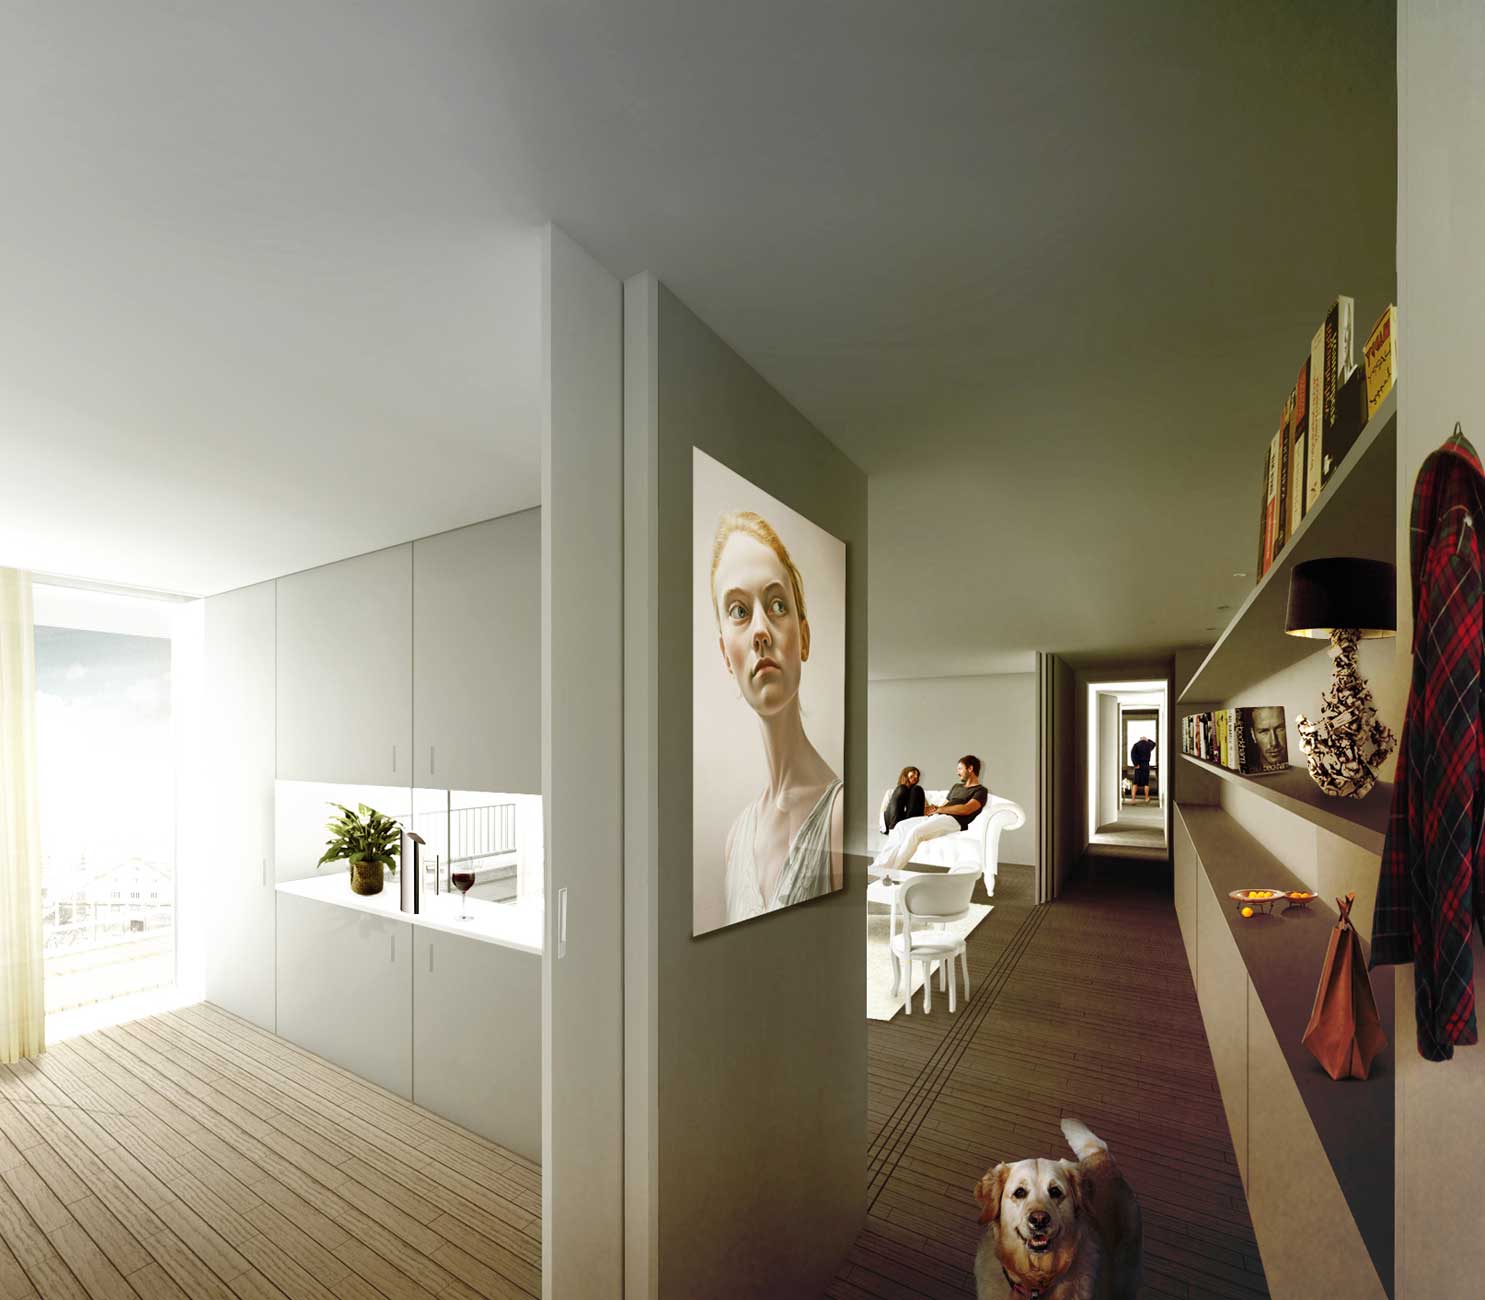 Uma recriação digital a ilustrar o interior da habitação colectiva